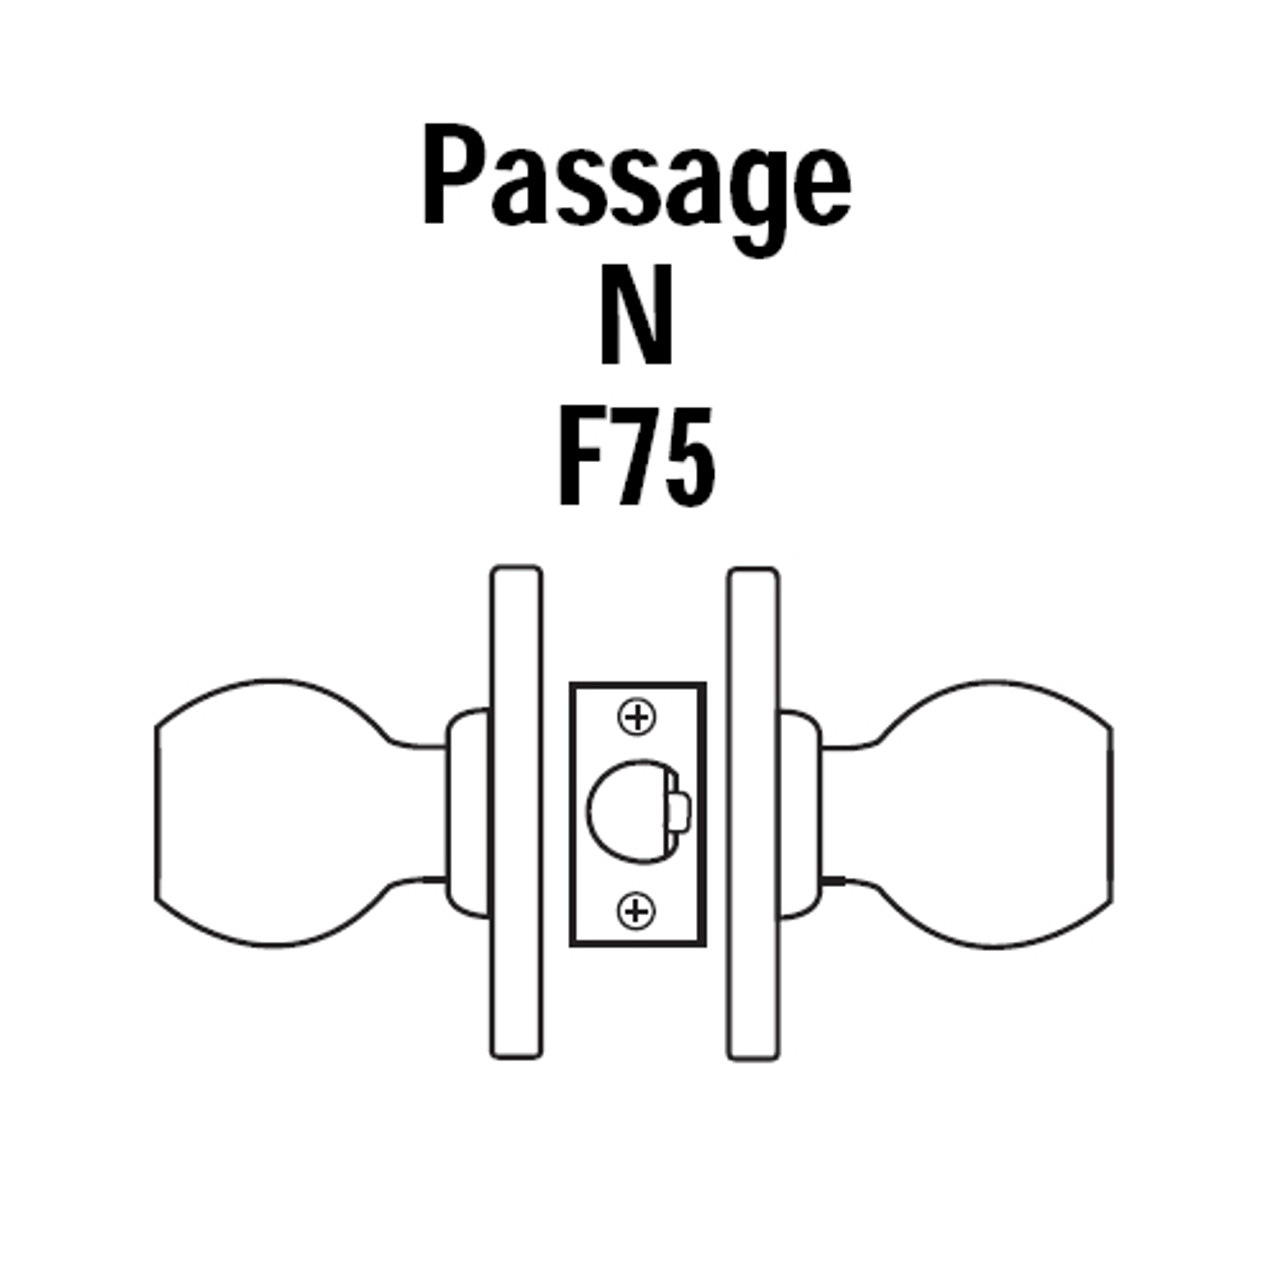 8K30N4ASTK612 Best 8K Series Passage Heavy Duty Cylindrical Knob Locks with Round Style in Satin Bronze